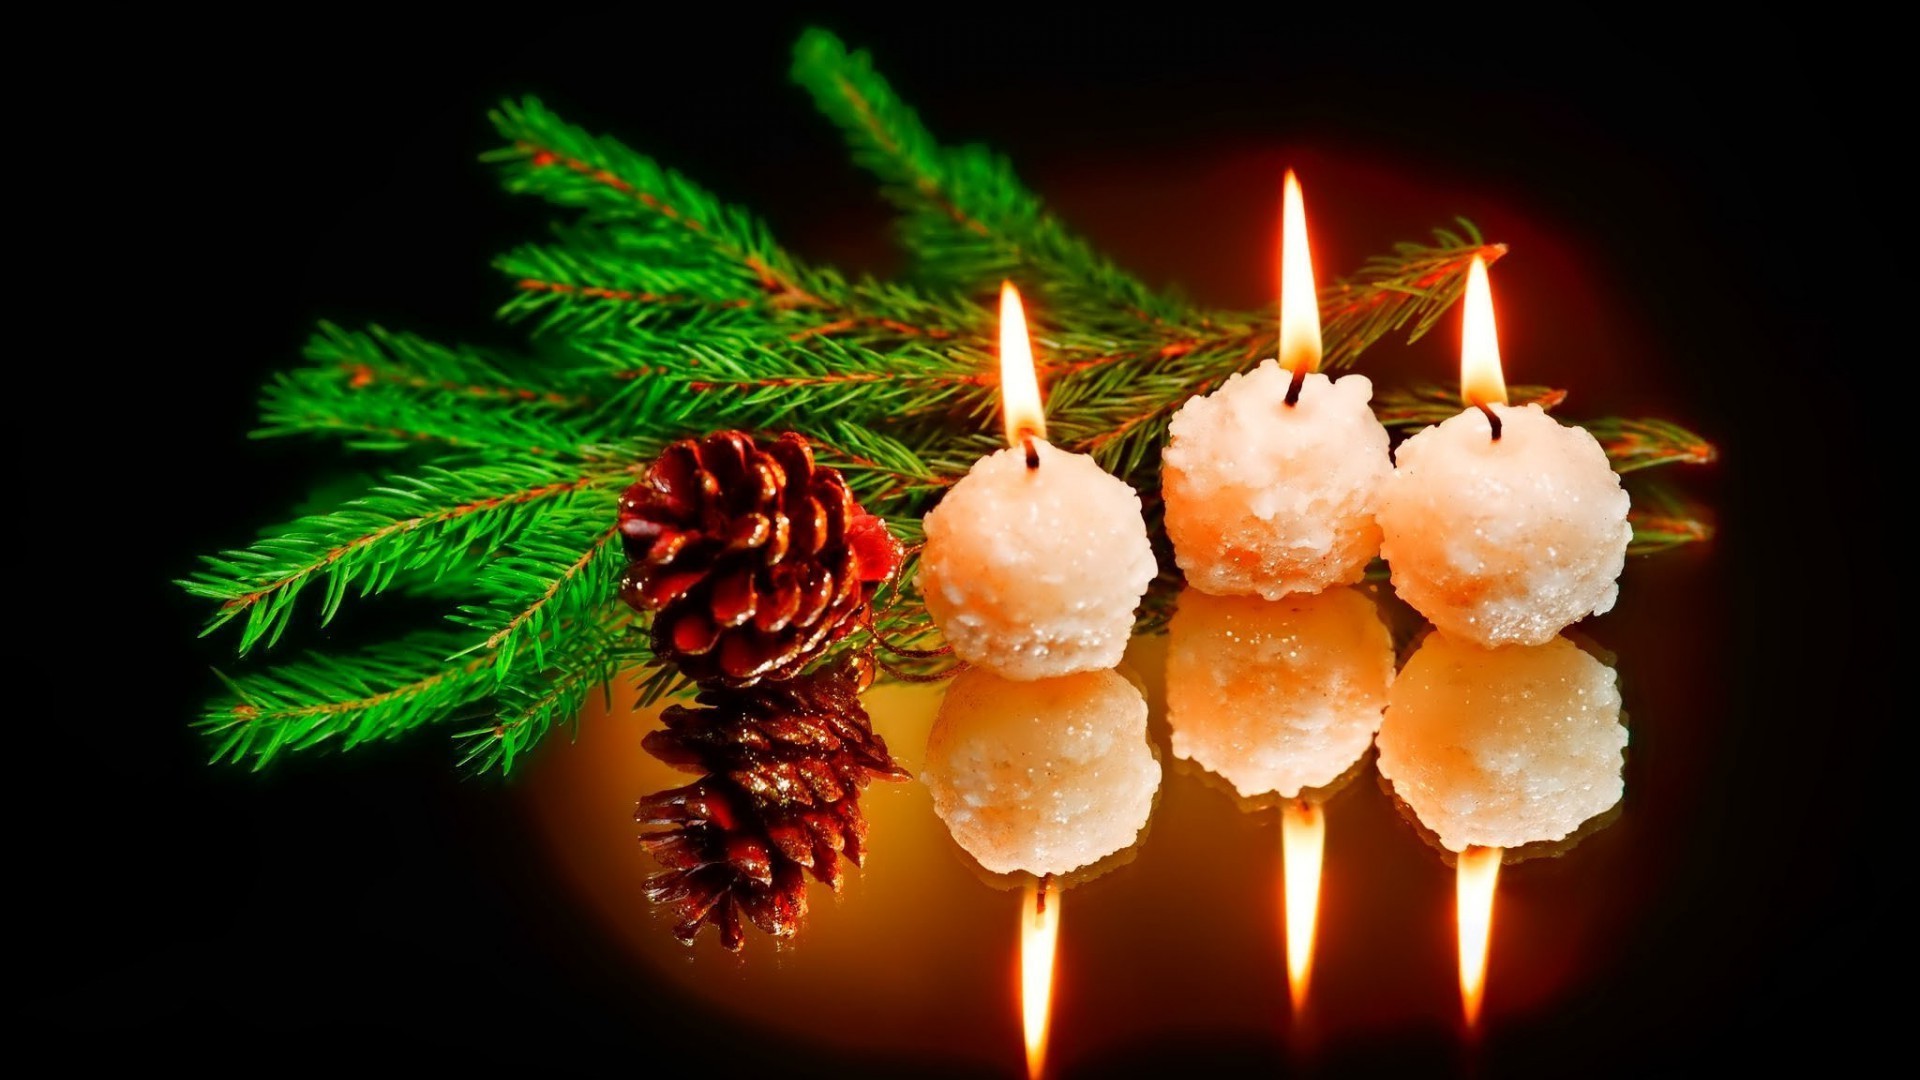 новый год свеча рождество свечи пламя праздник сожгли зима свет воск украшения появлением фитиль золото сосна рабочего стола